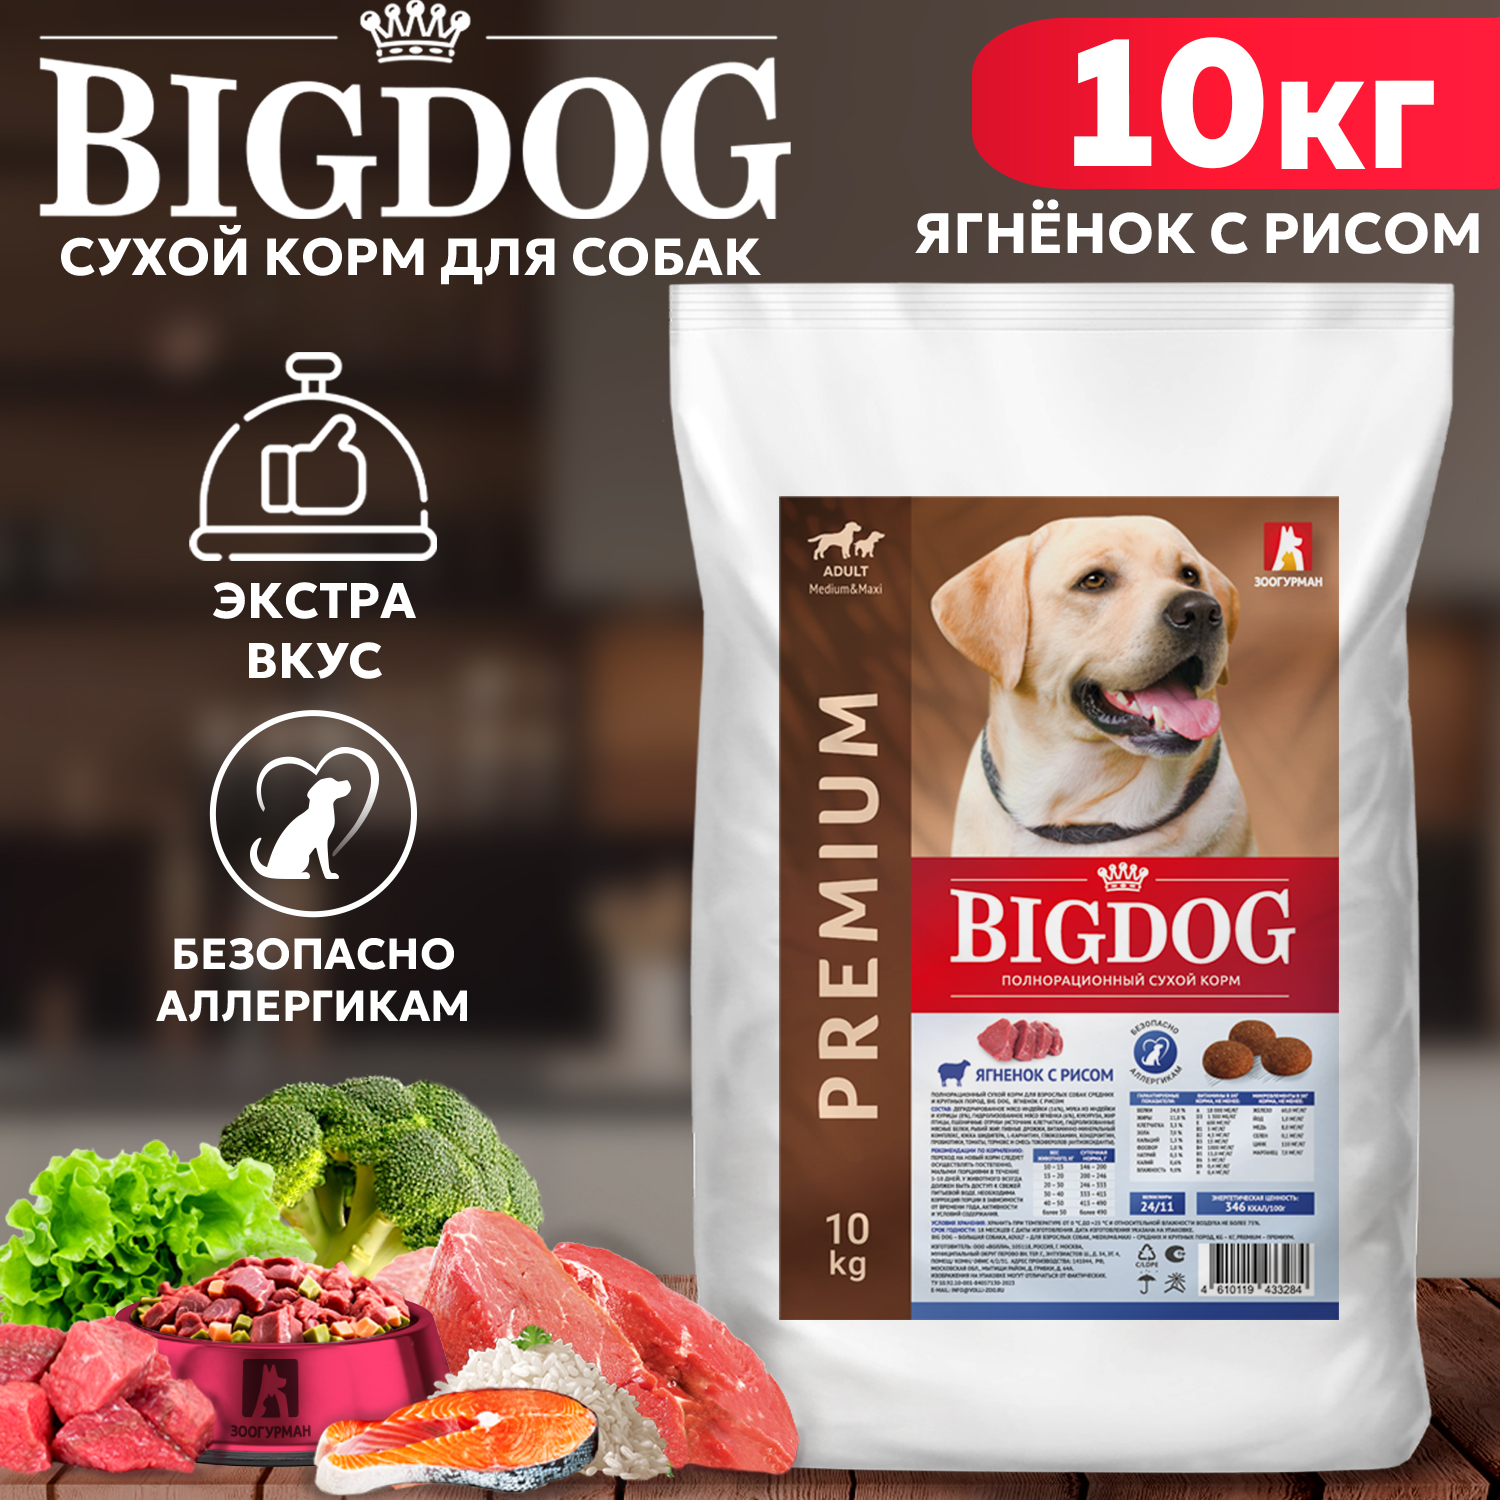 Сухой корм для собак BIG DOG, для средних и крупных пород, ягненок с рисом,10 кг